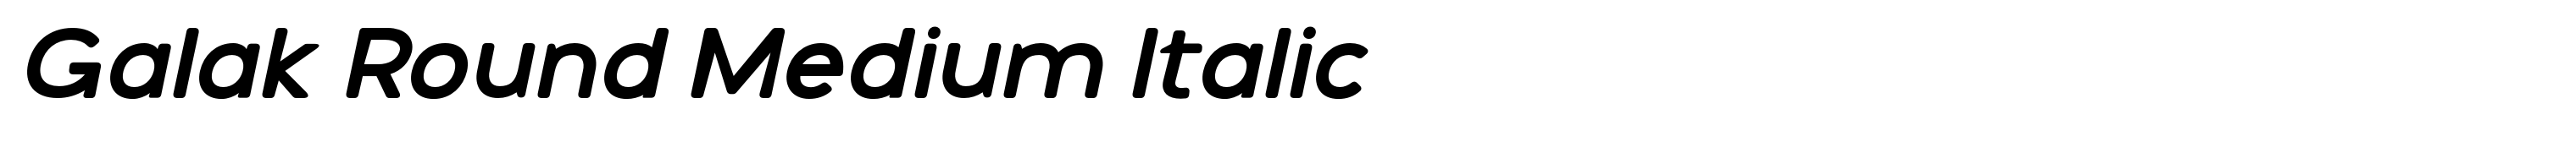 Galak Round Medium Italic